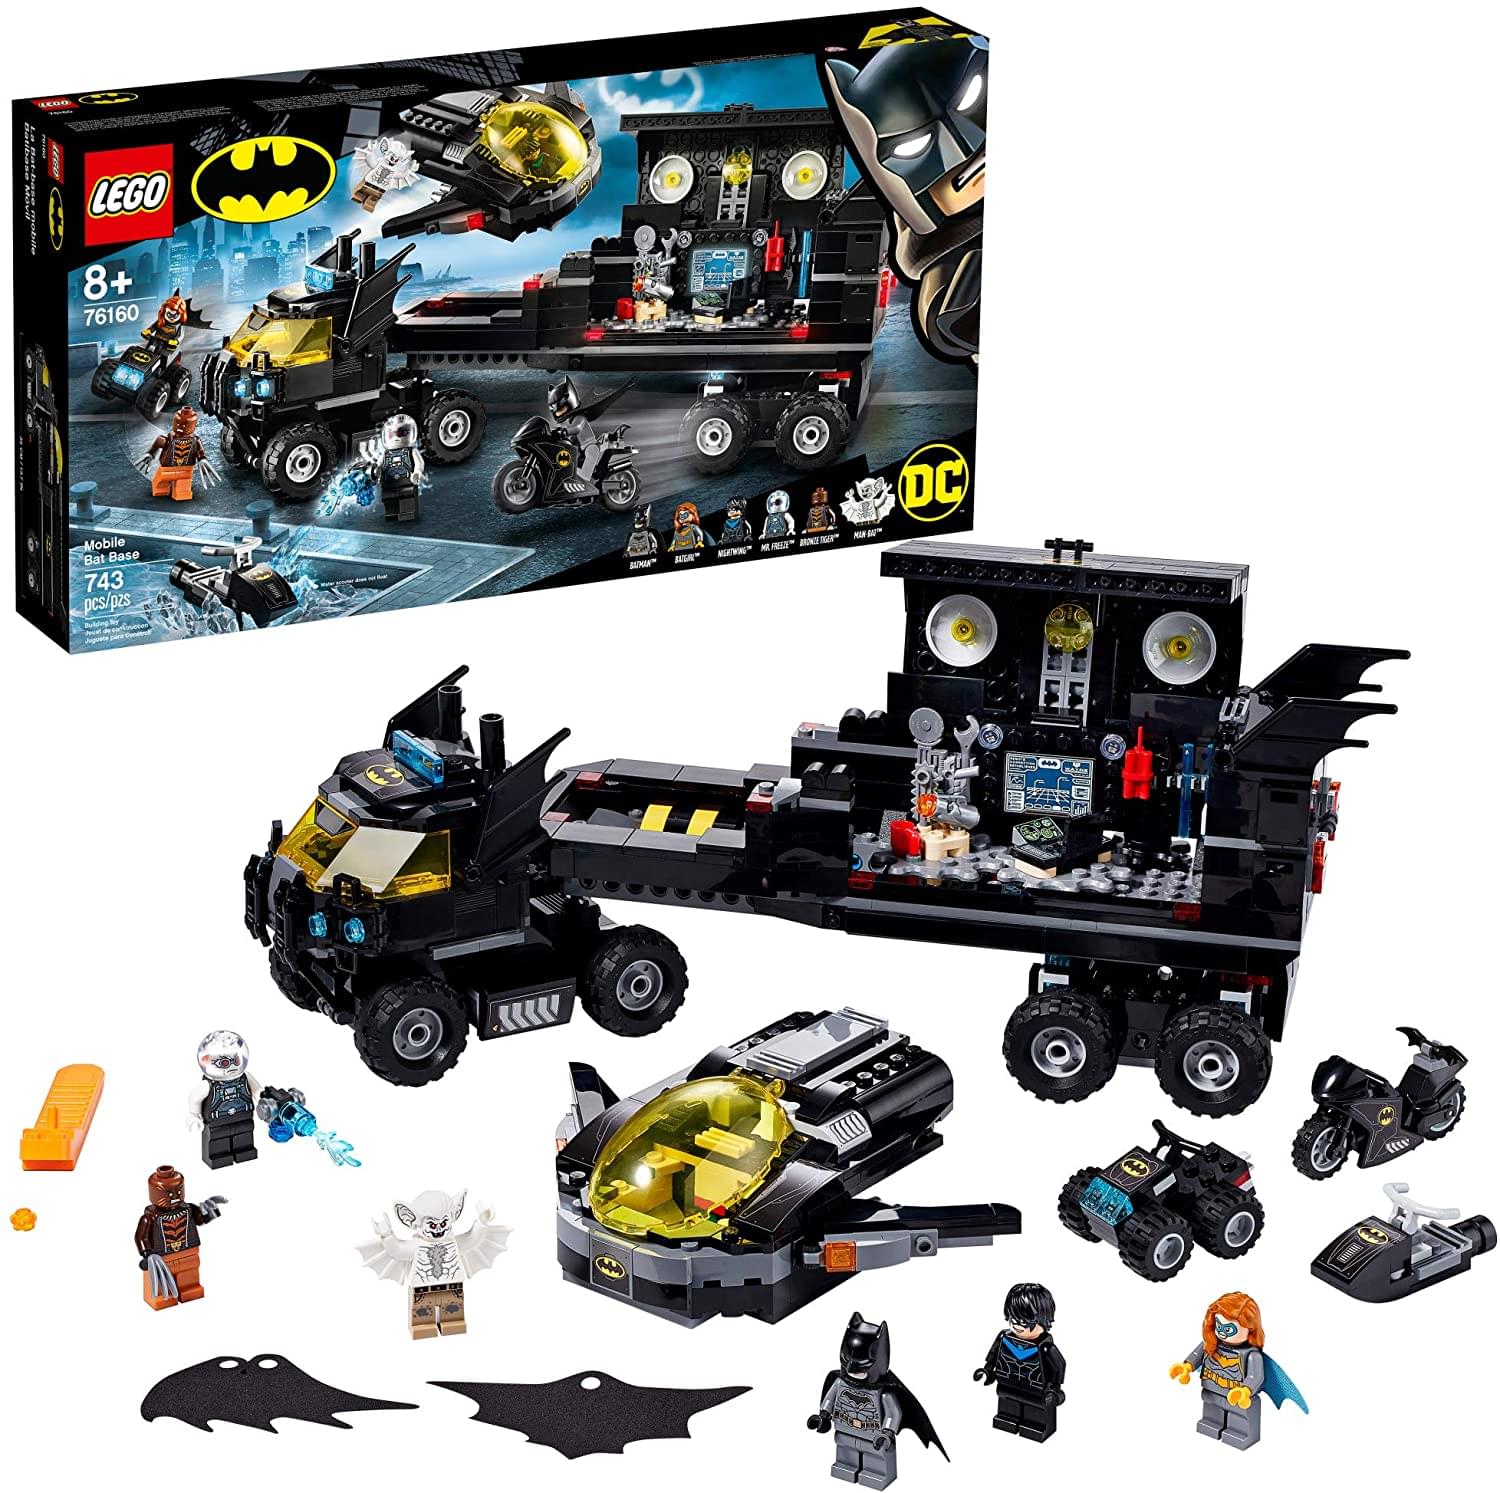 LEGO DC Comics 76160 Mobile Bat Base 743 Piece Building Kit